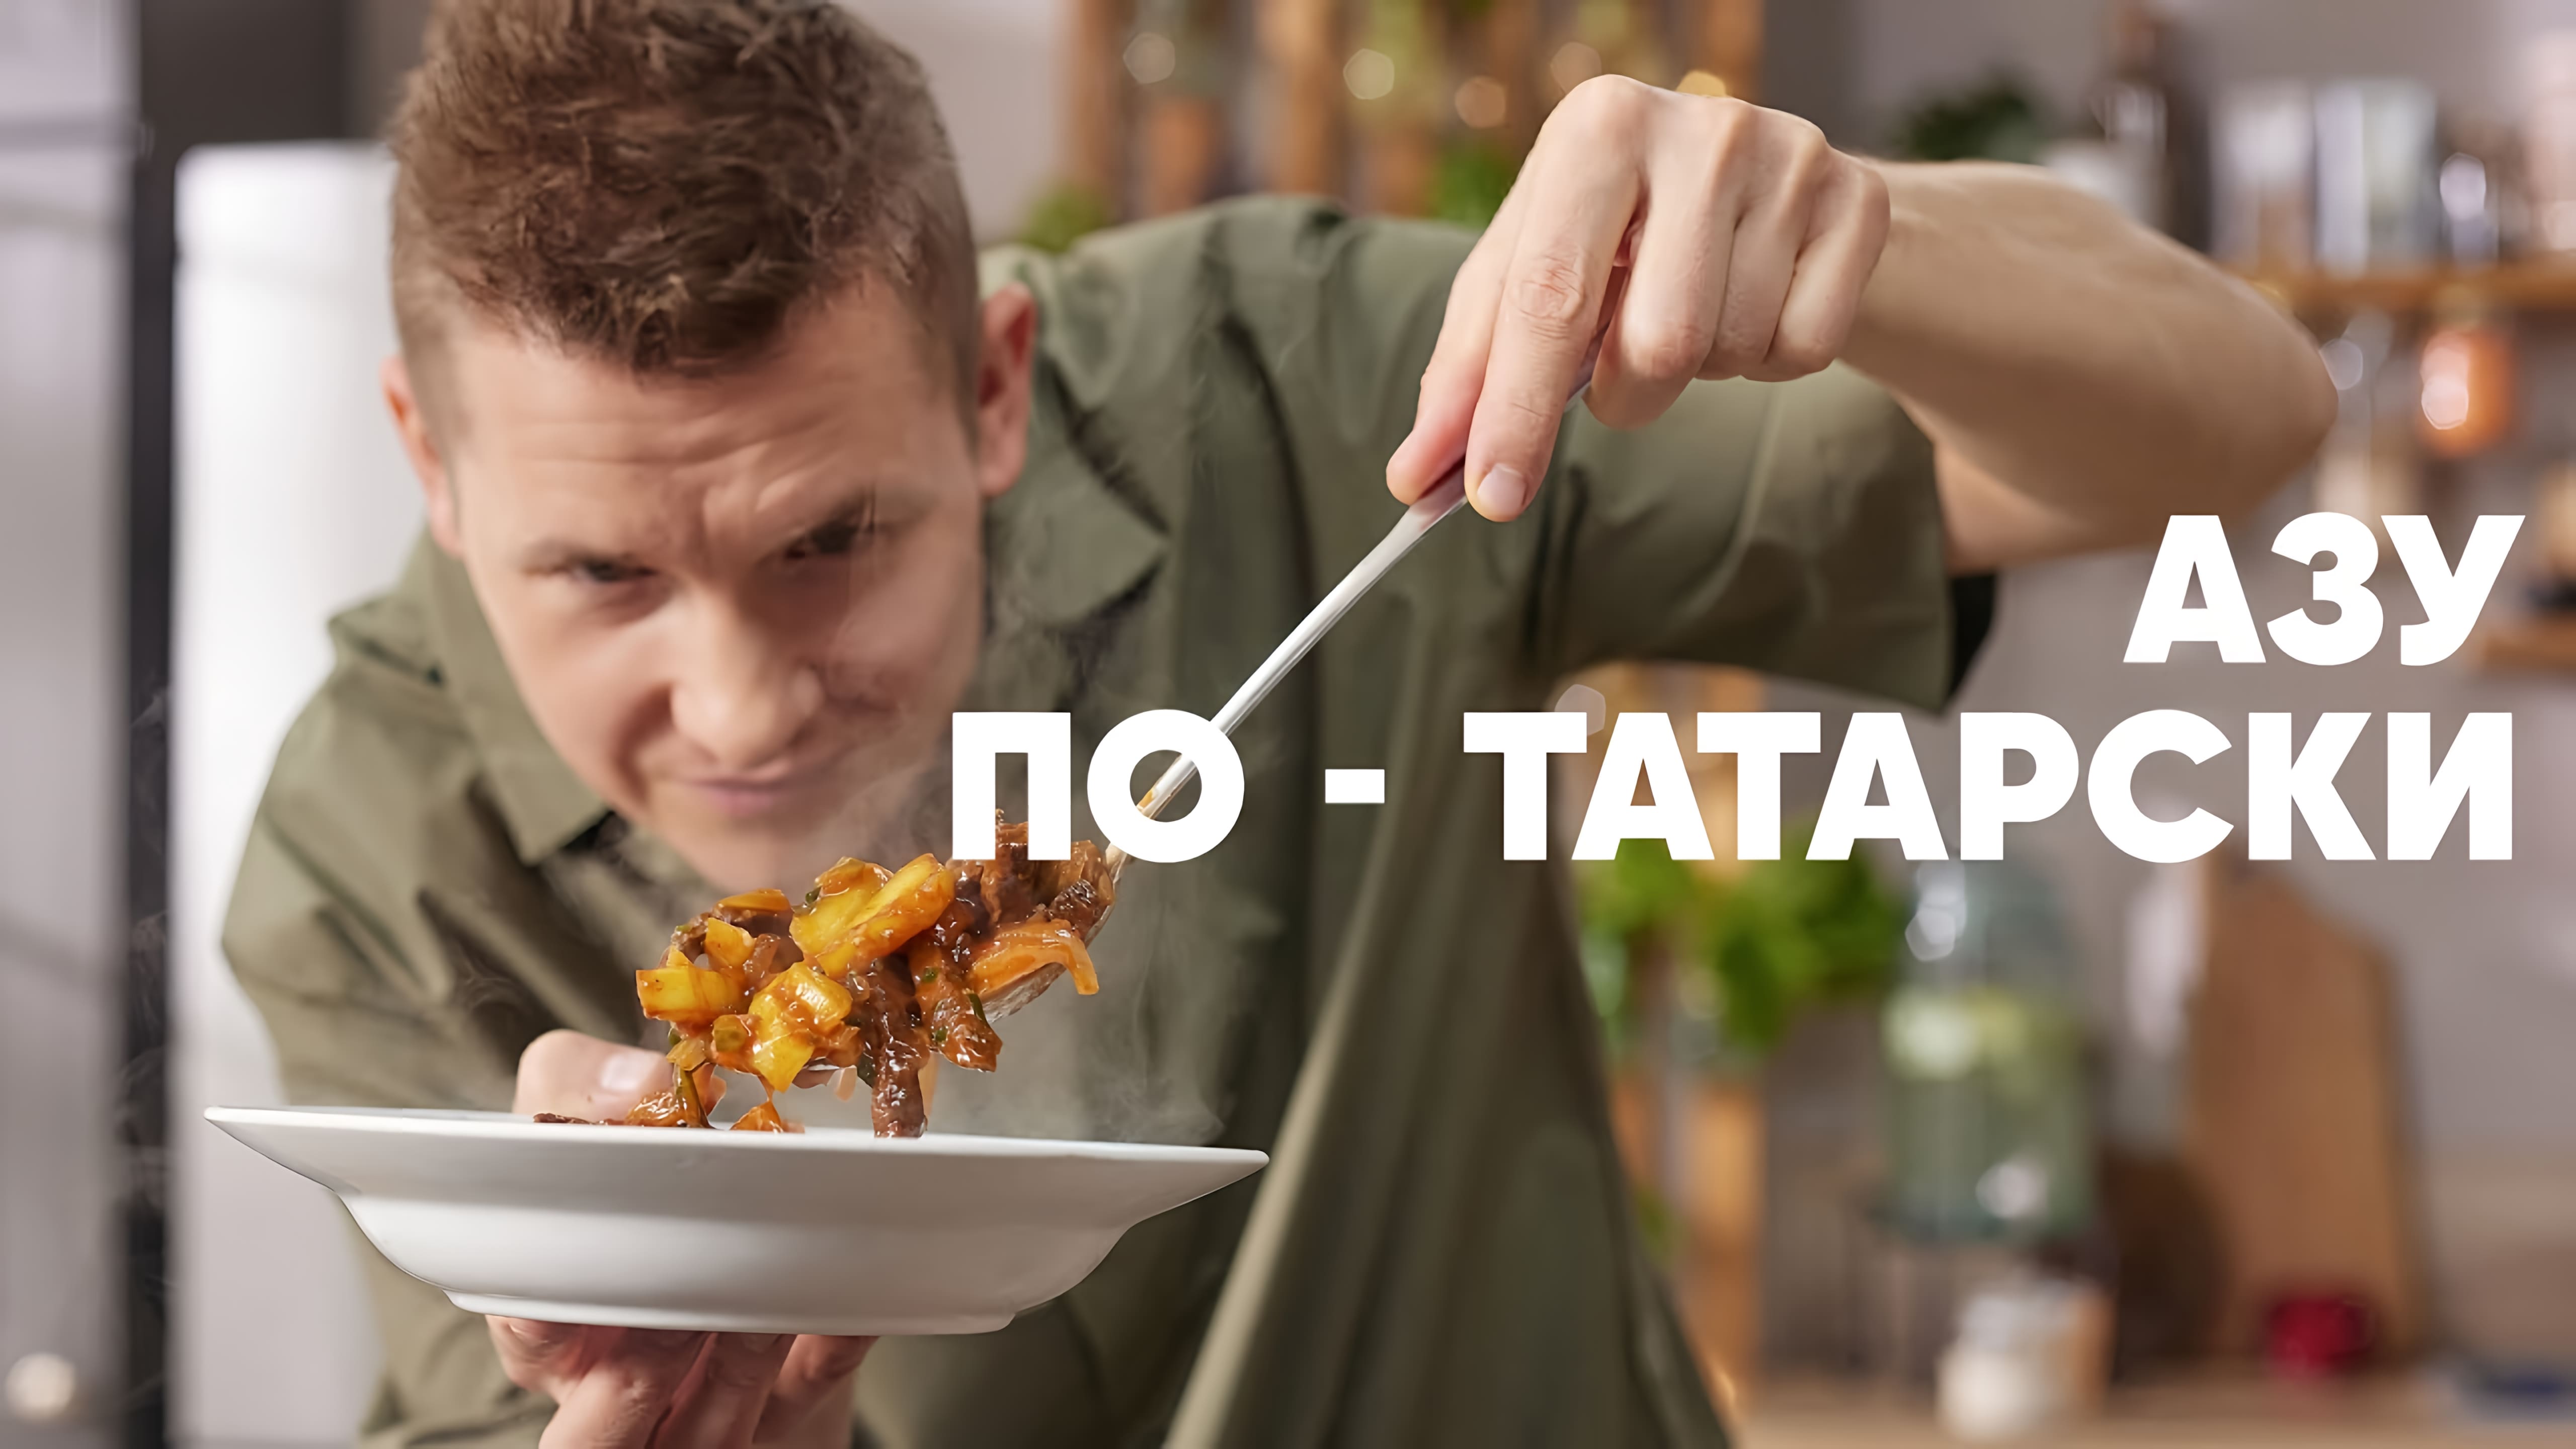 Видео: АЗУ ПО-ТАТАРСКИ — рецепт от шефа Бельковича | ПроСто кухня |